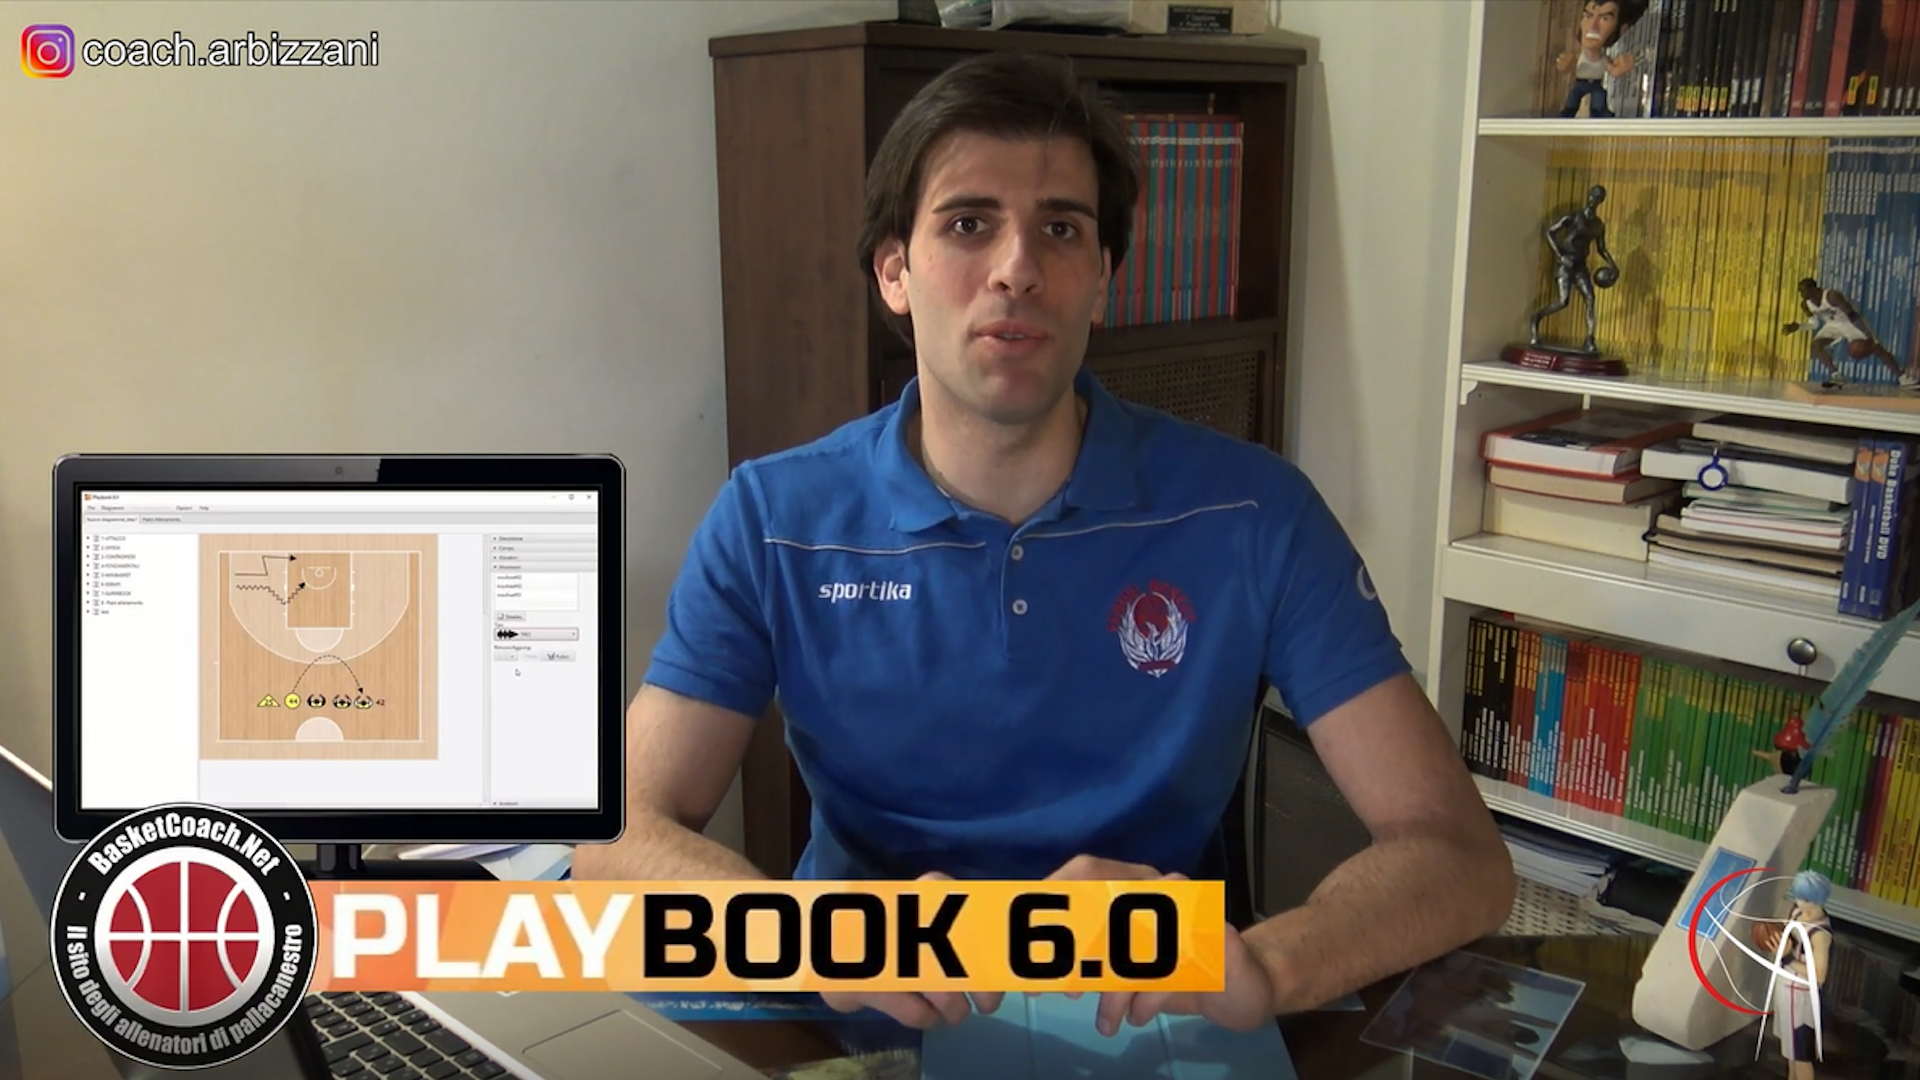 <p>Come costruire un piano di allenamento con il PlayBook 6.0 a cura di Coach Andrea Arbizzani</p>
